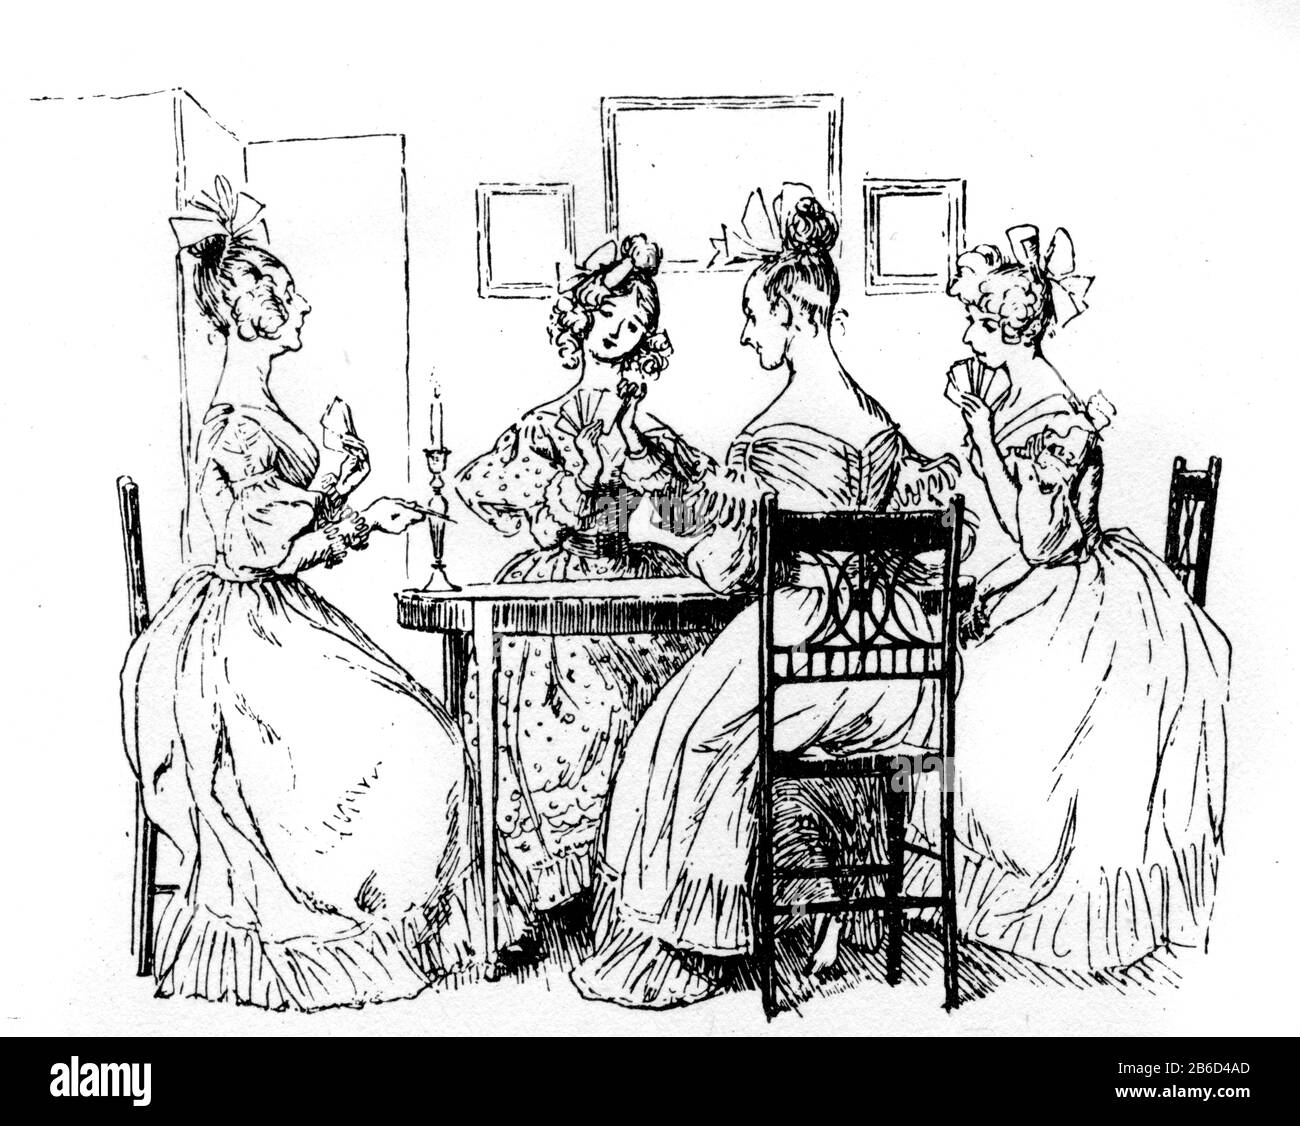 Unsere Gesellschaft, 1891. Eine Illustration aus Cranford von Elizabeth Gaskell (1810-1865). Cranford wurde erstmals in acht Raten zwischen Dezember 1851 und Mai 1853 veröffentlicht. Dies ist eine Illustration von Hugh Thomson (1860-1920) aus der Ausgabe 1891. Stockfoto